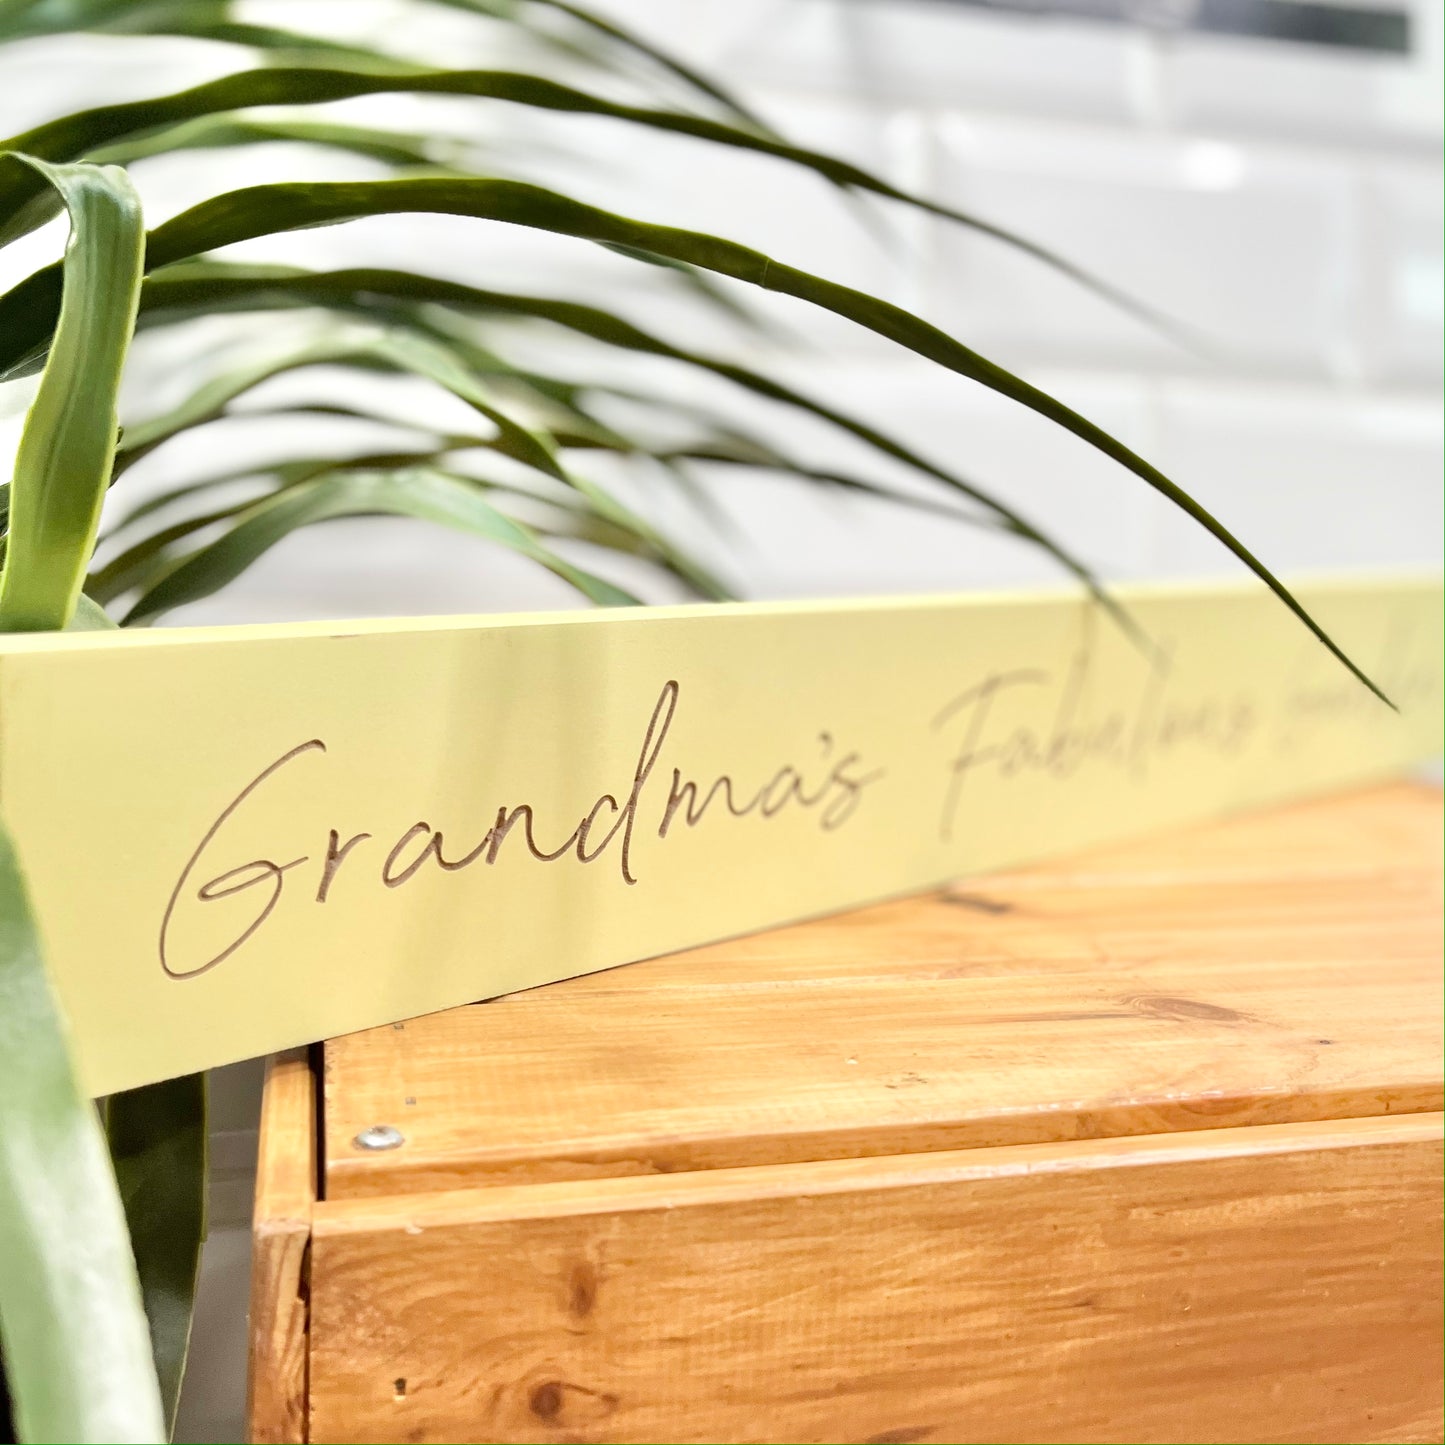 Grandma’s Fabulous Garden Plaque